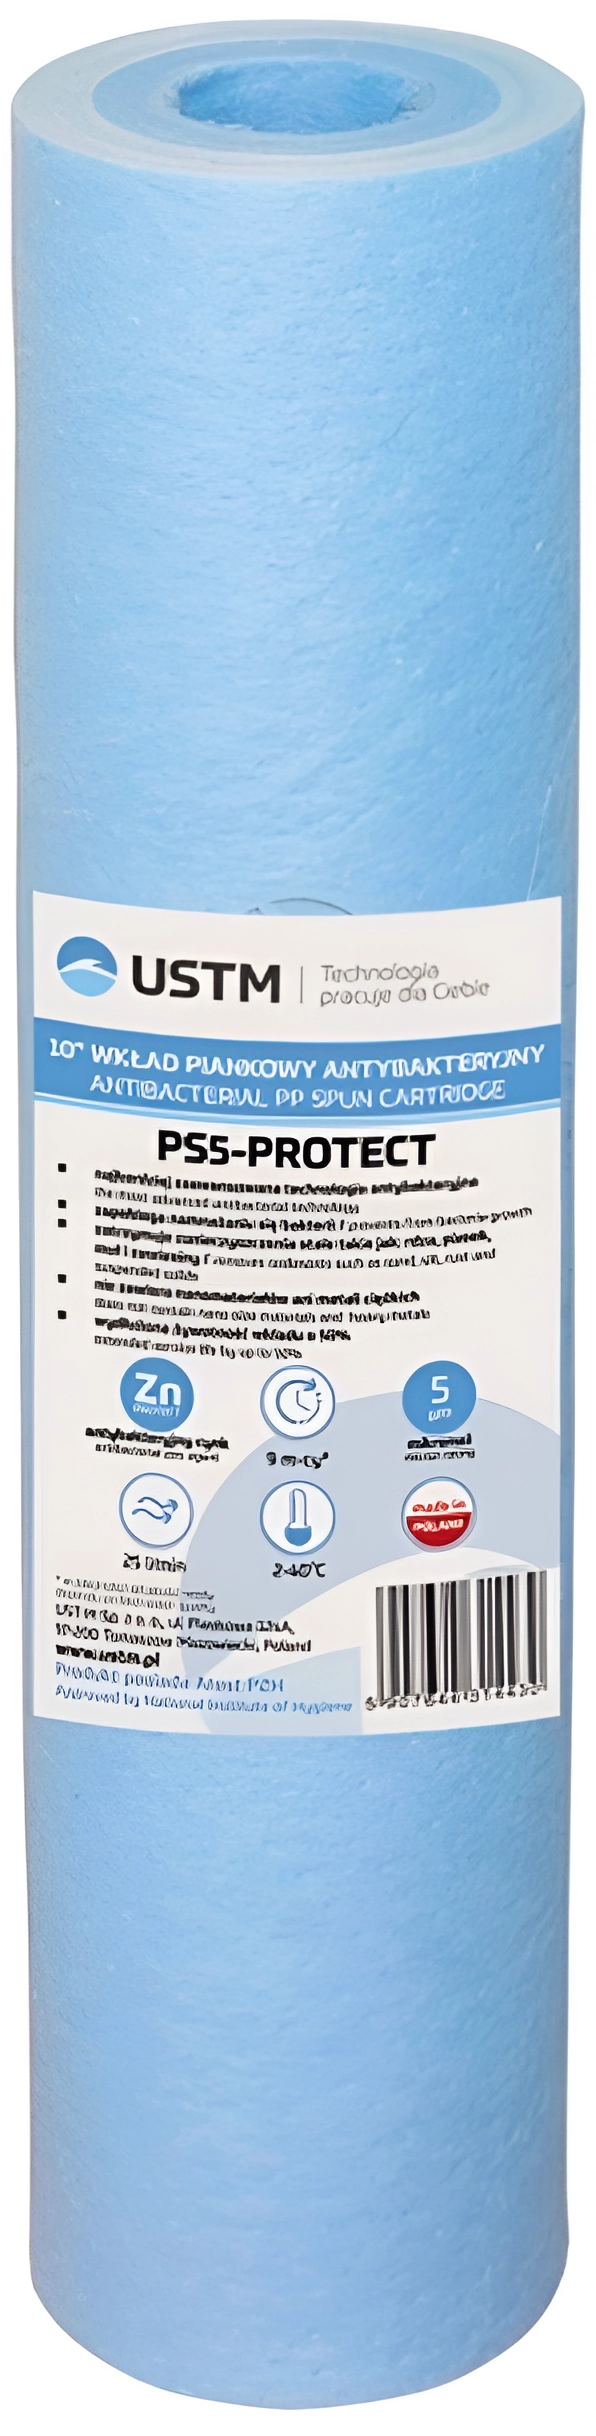 Картридж для фильтра USTM PS-5-Protect 10"